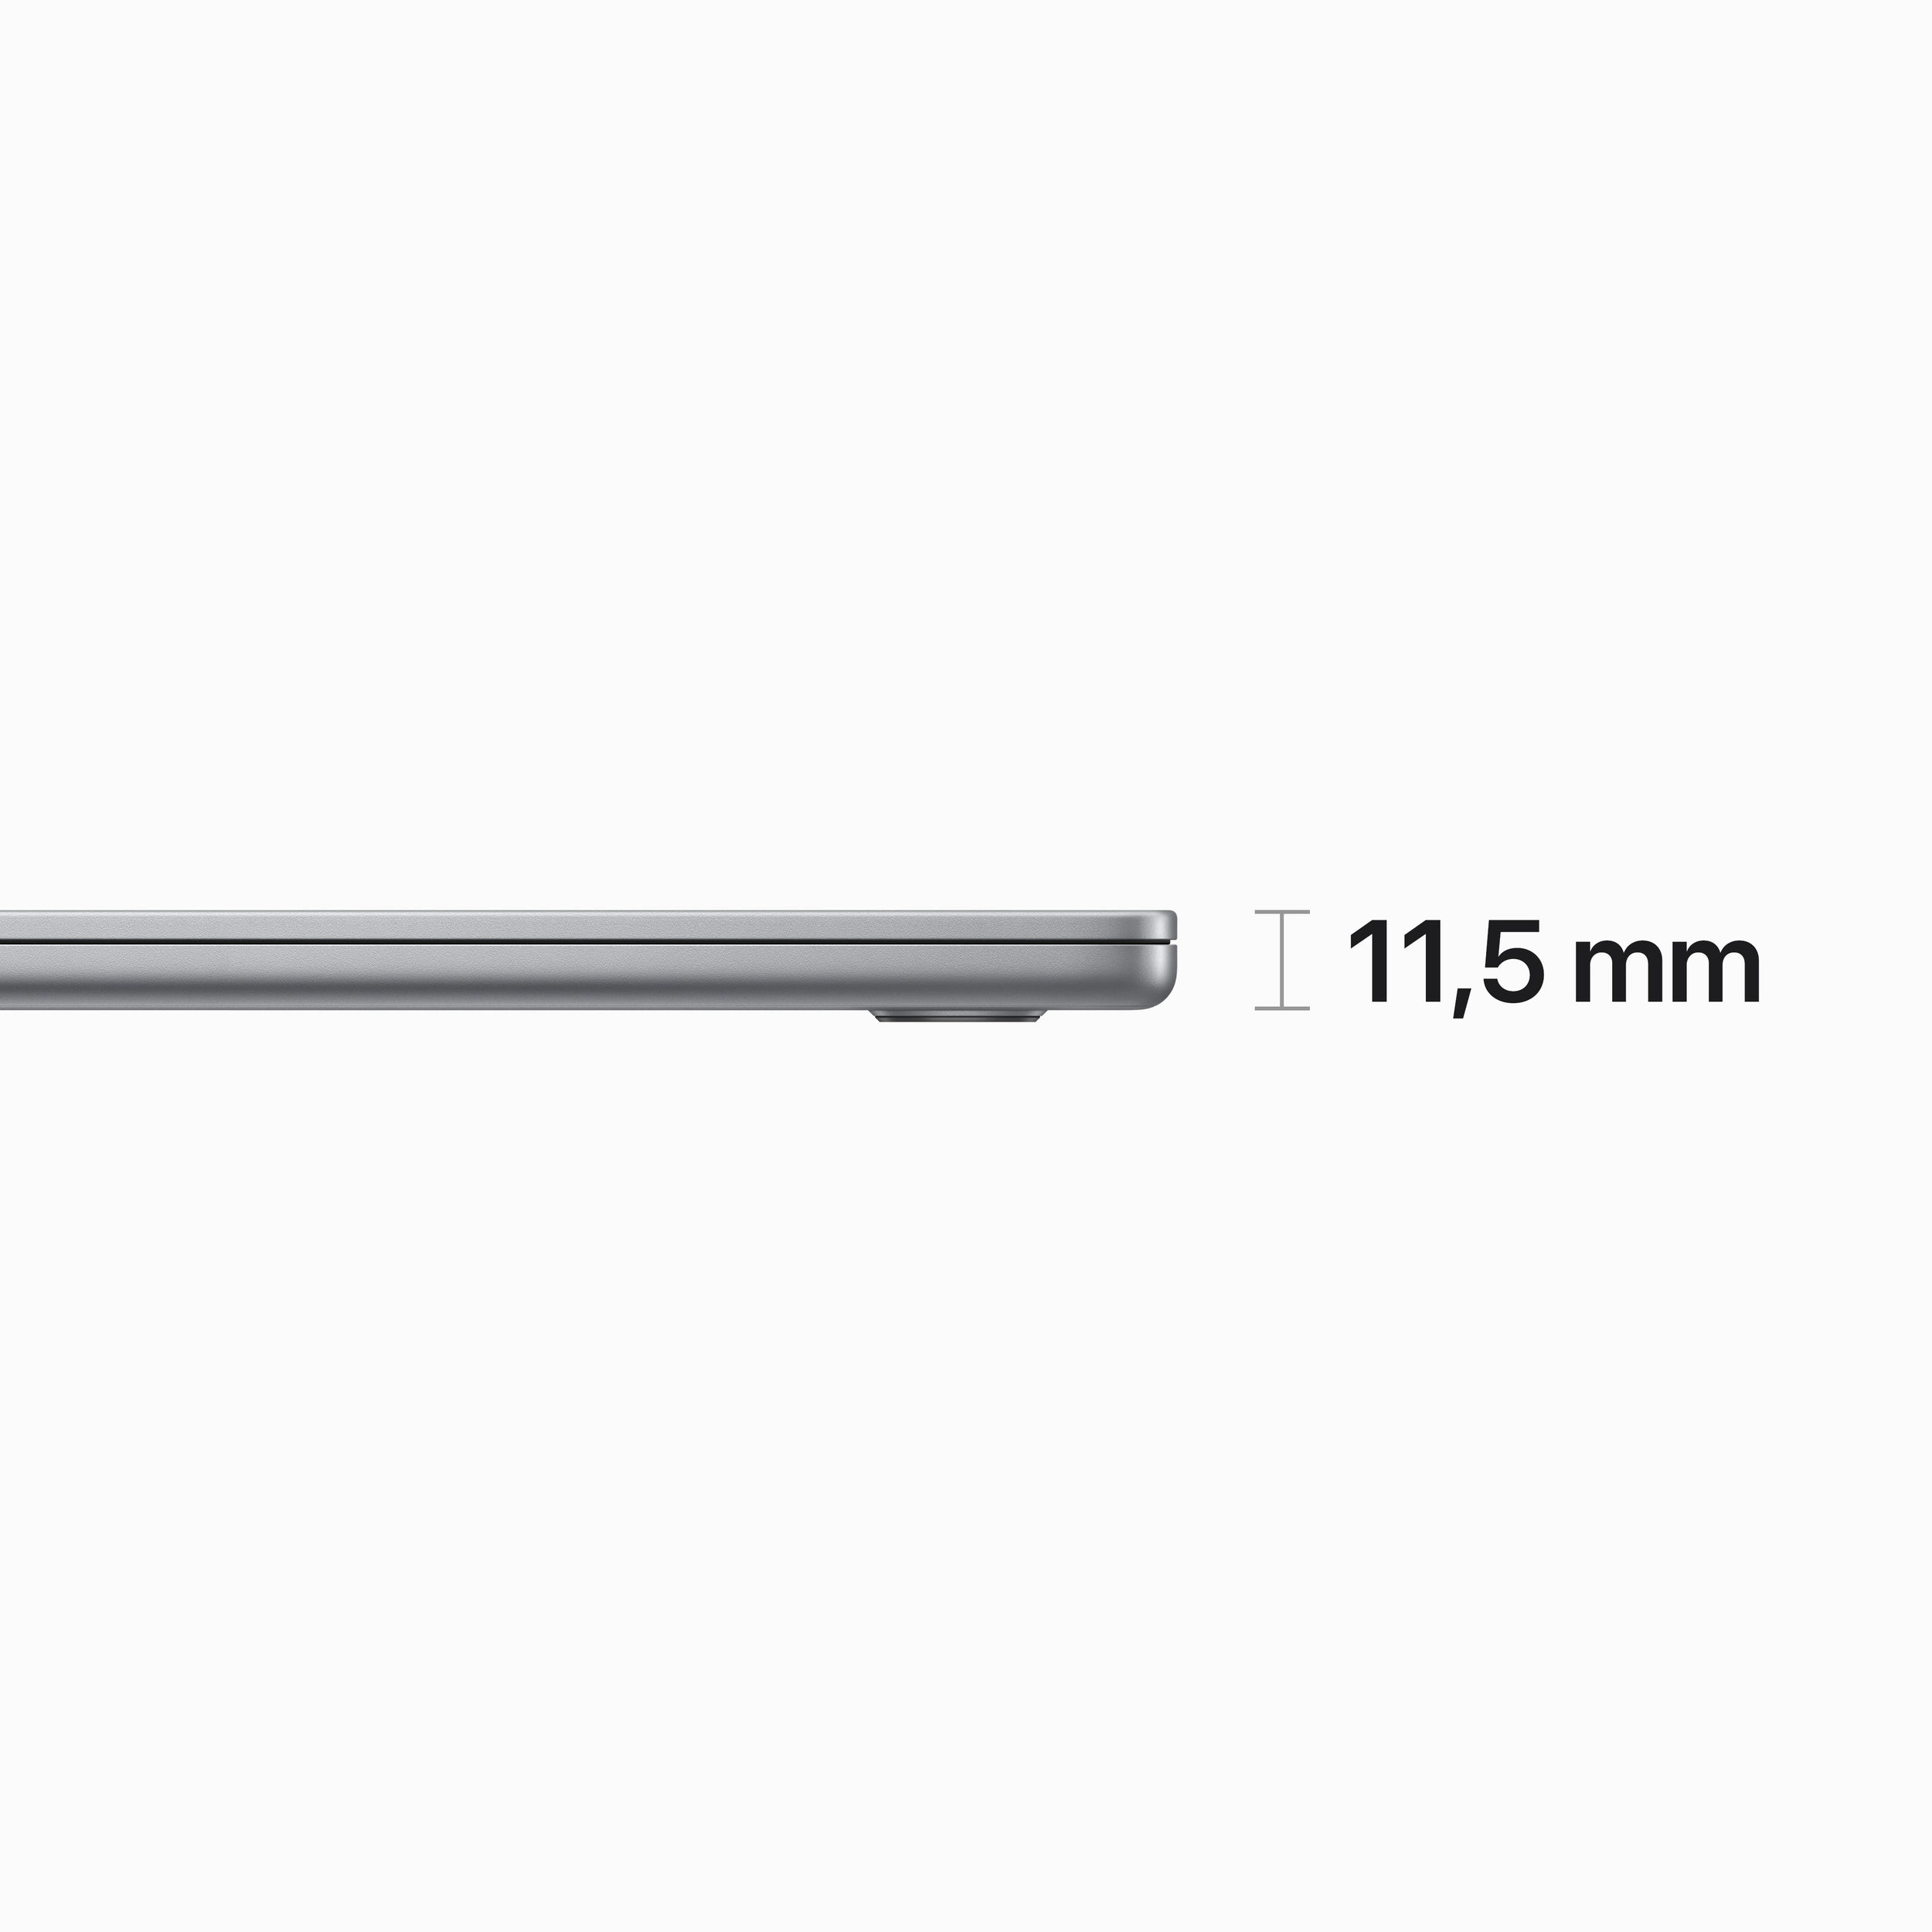 Macbook Apple Mqkq3E/A Air 15 Pulgadas Chip M2 8N Cpu 10N Gpu 512Gb Ssd 8Gb Ram Gris Espacial